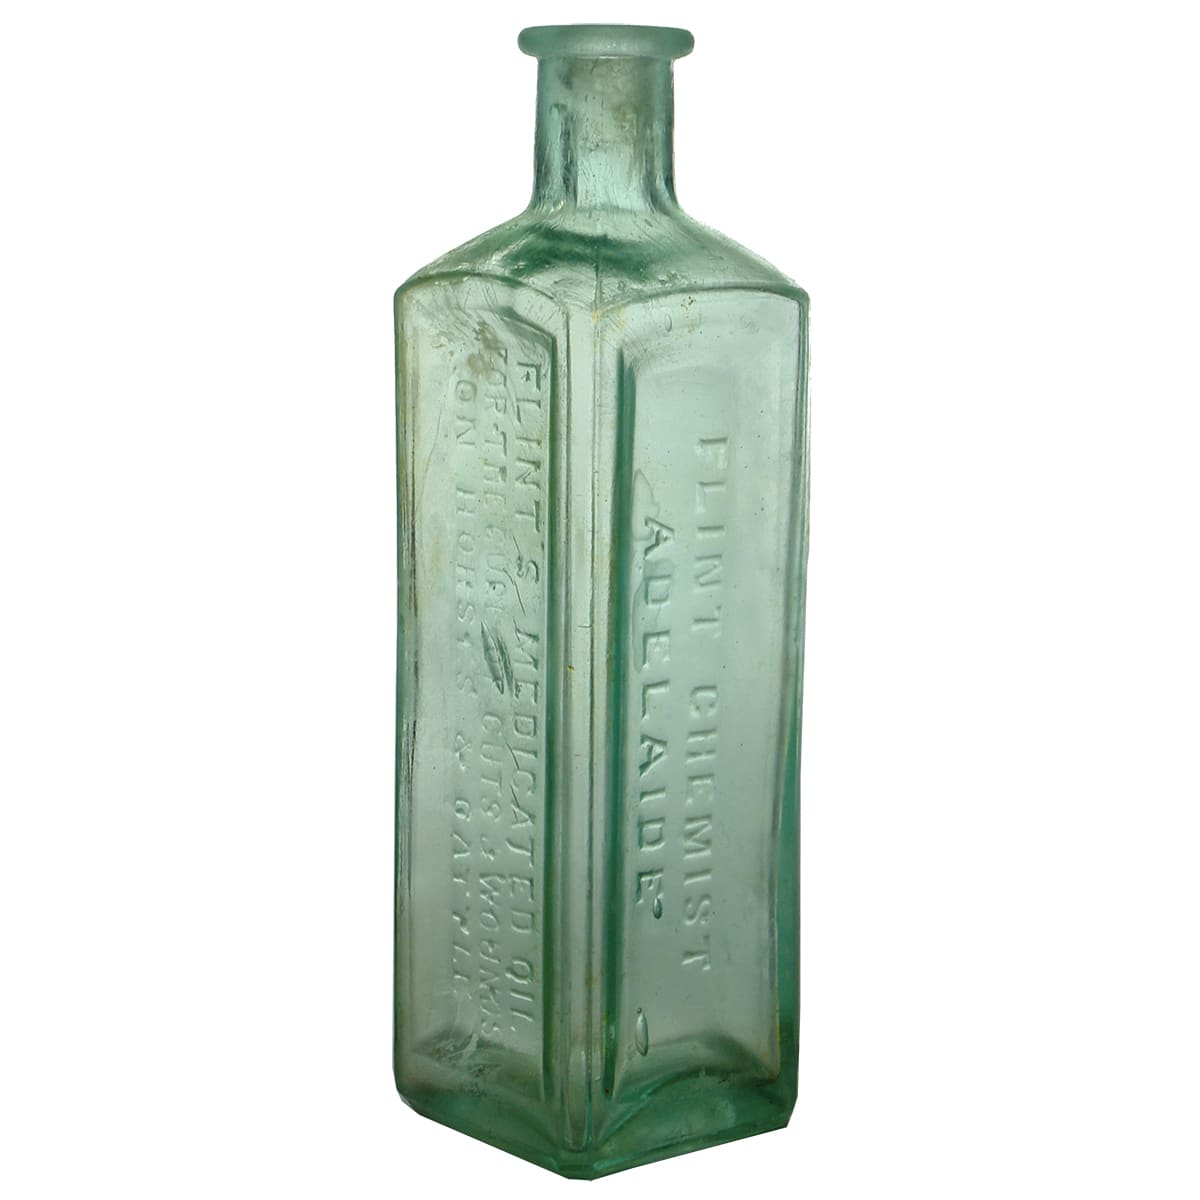 Vet Bottle. Flint's Medicated Oils. Adelaide. Aqua. 6 oz. (South Australia)